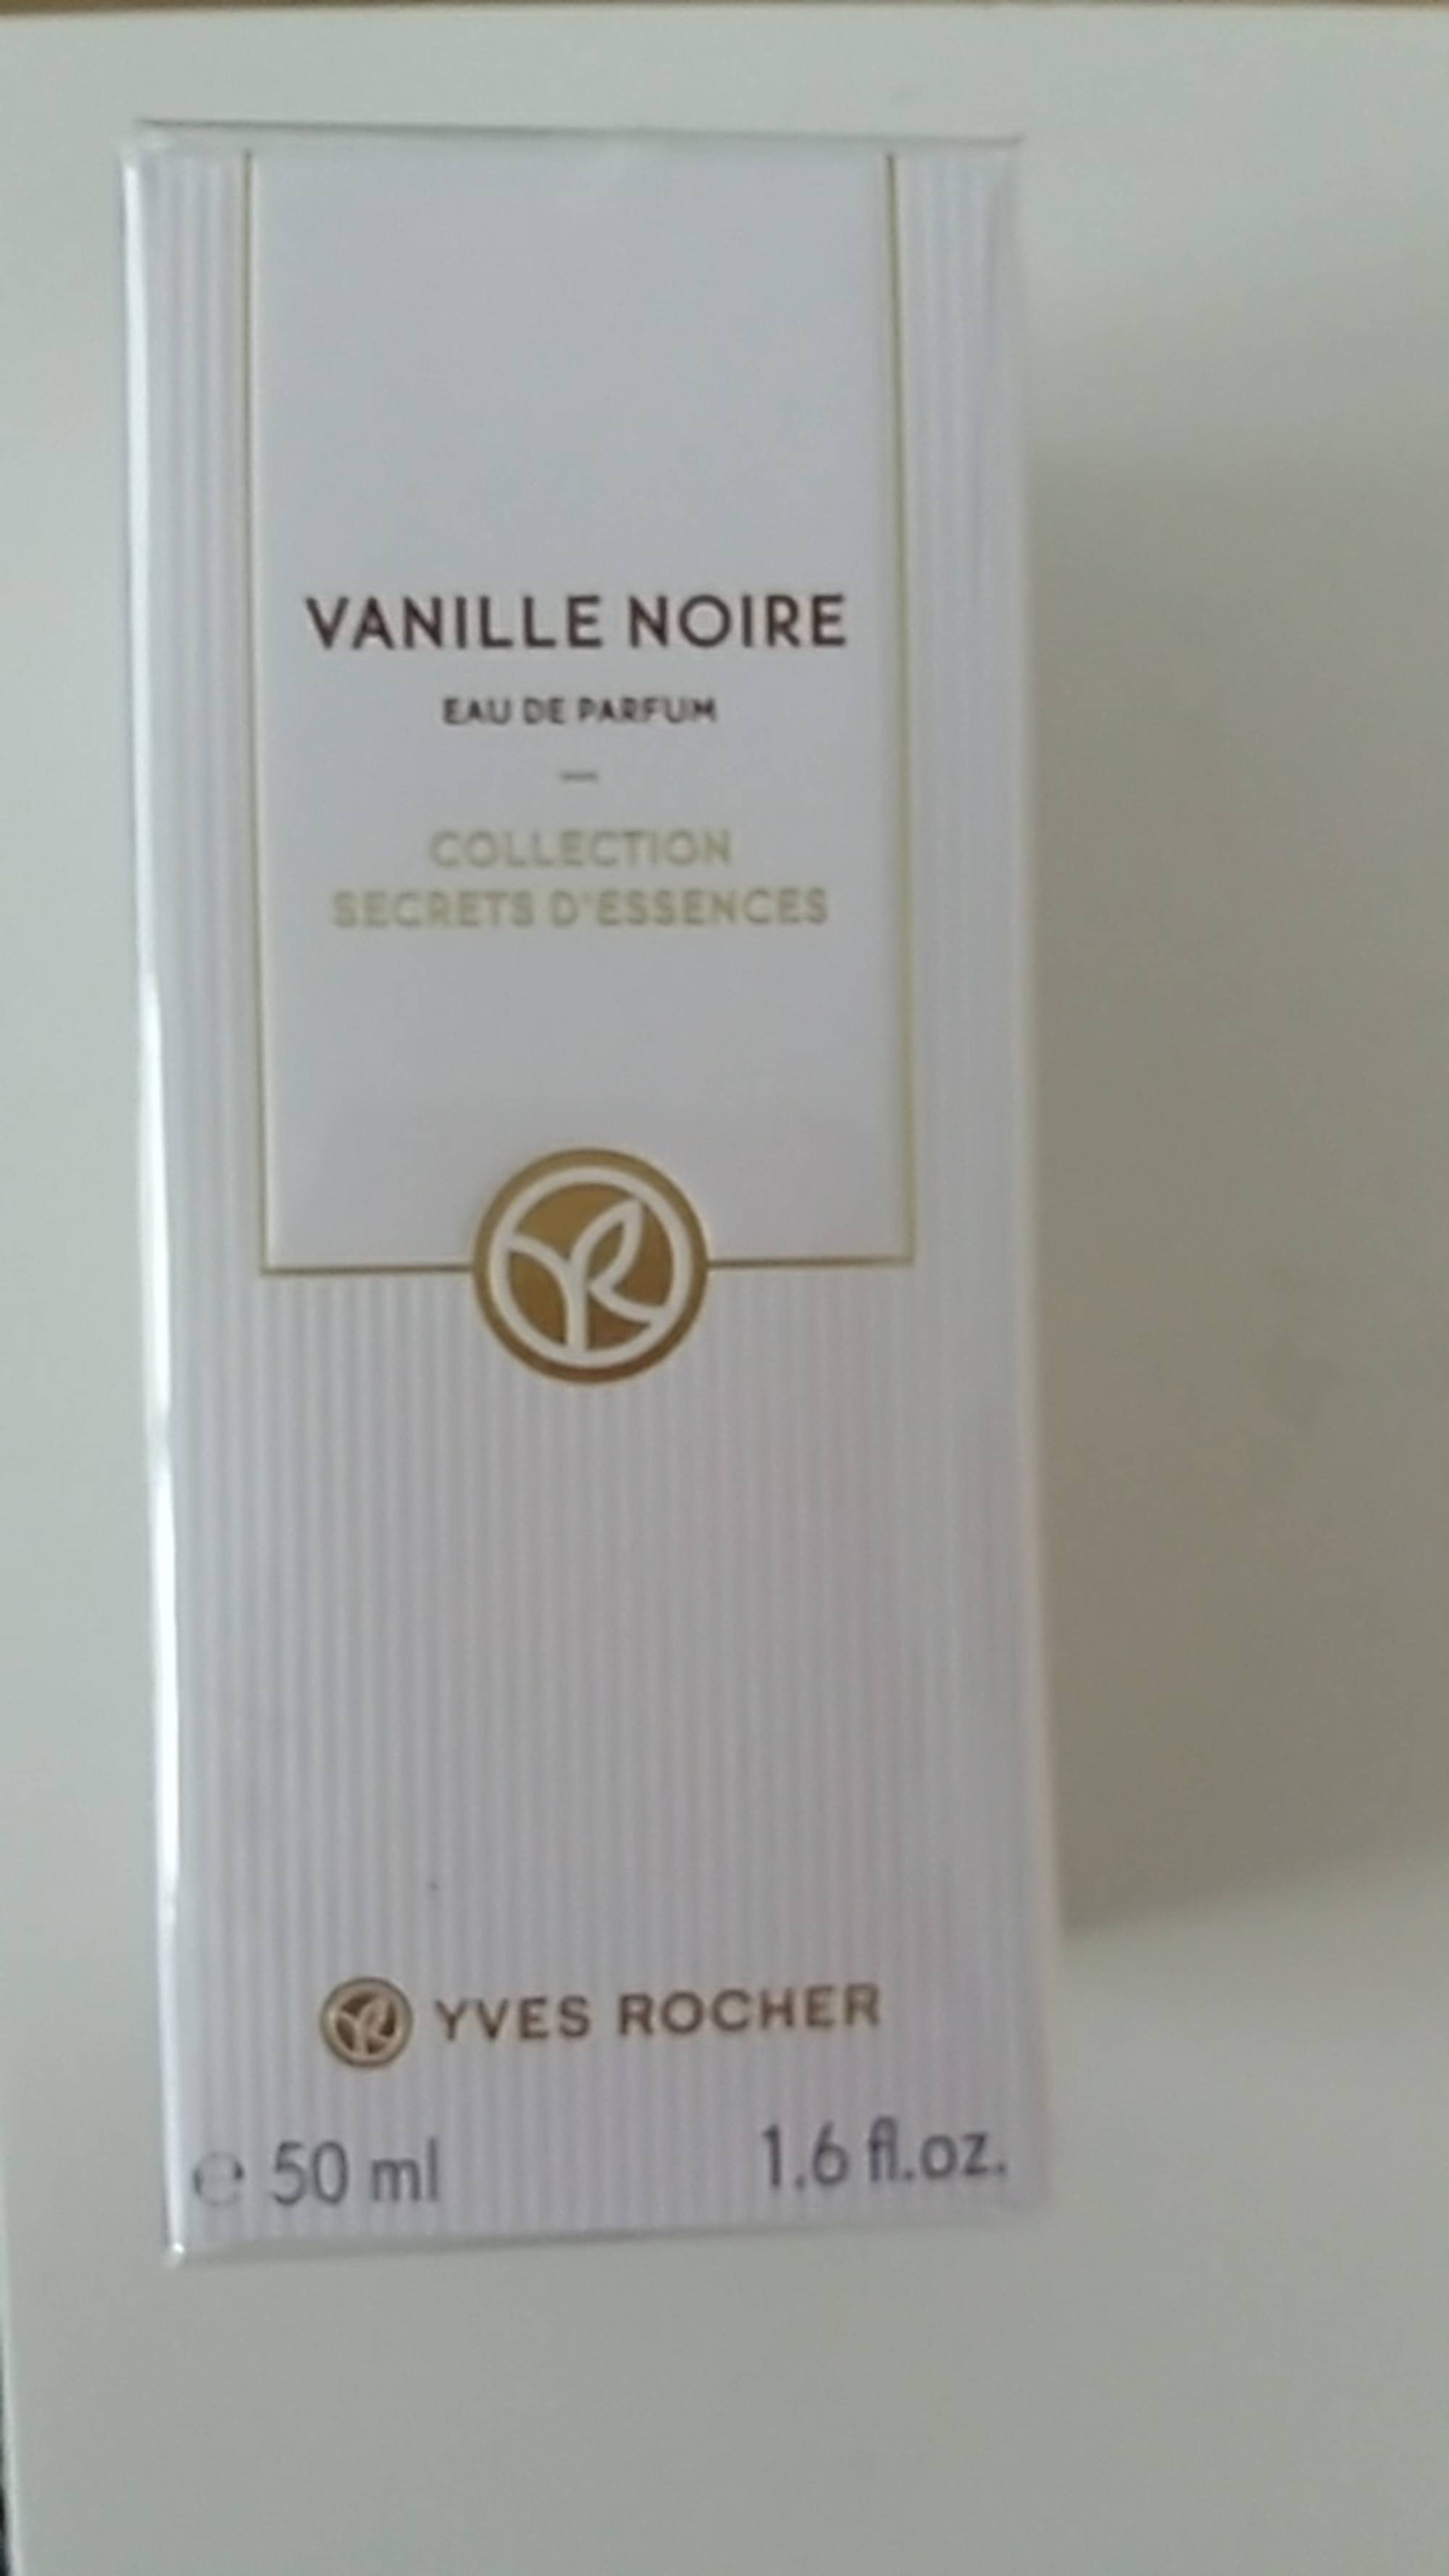 YVES ROCHER - Vanille noire - Eau de parfum